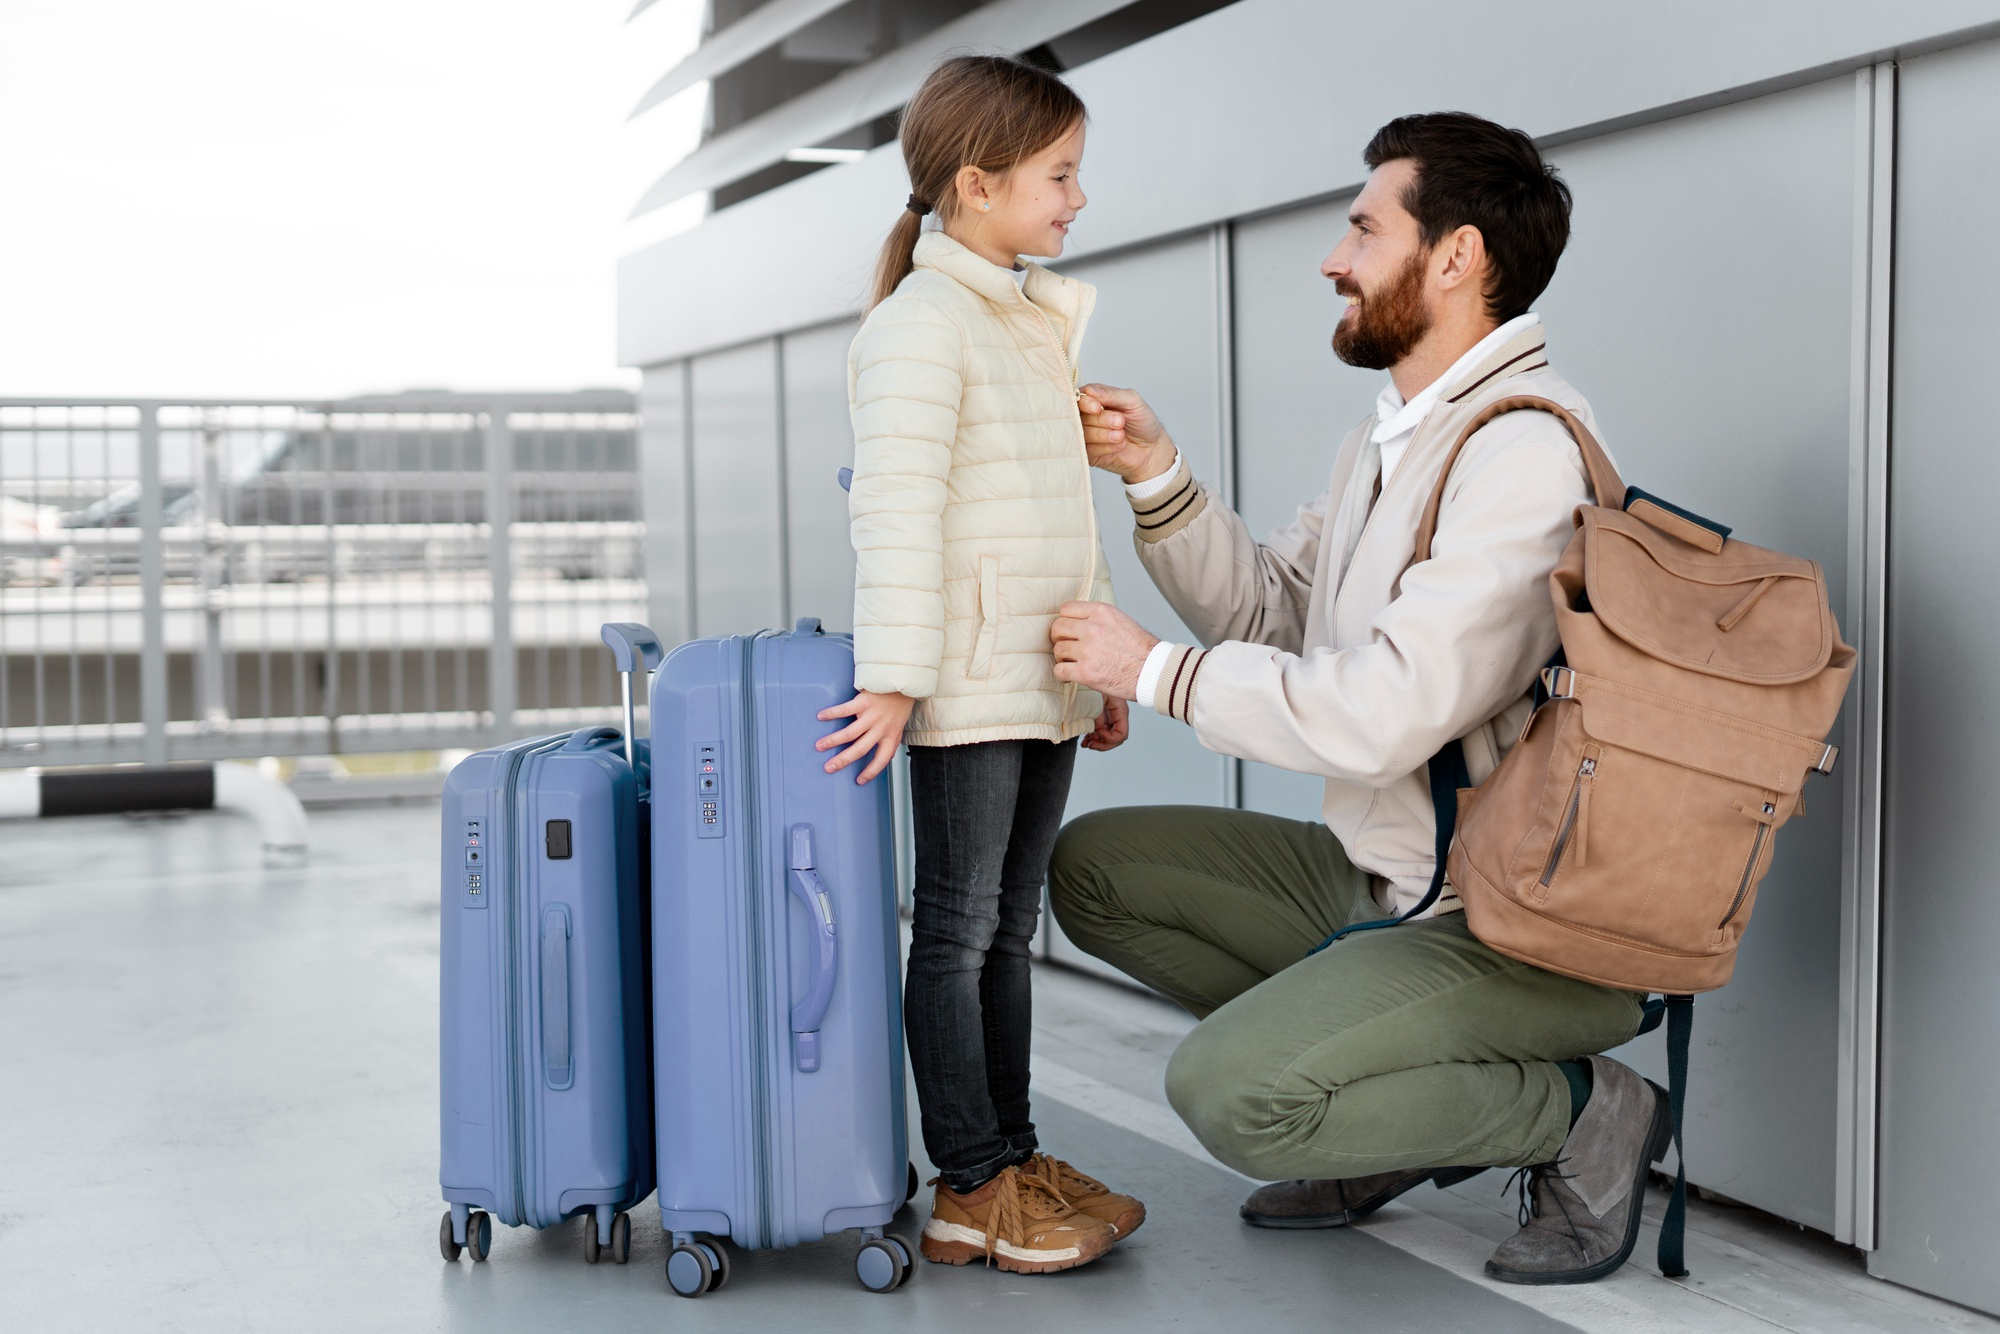 Un padre y su hija listos para su viaje con el equipaje a mano | Fuente: Freepik